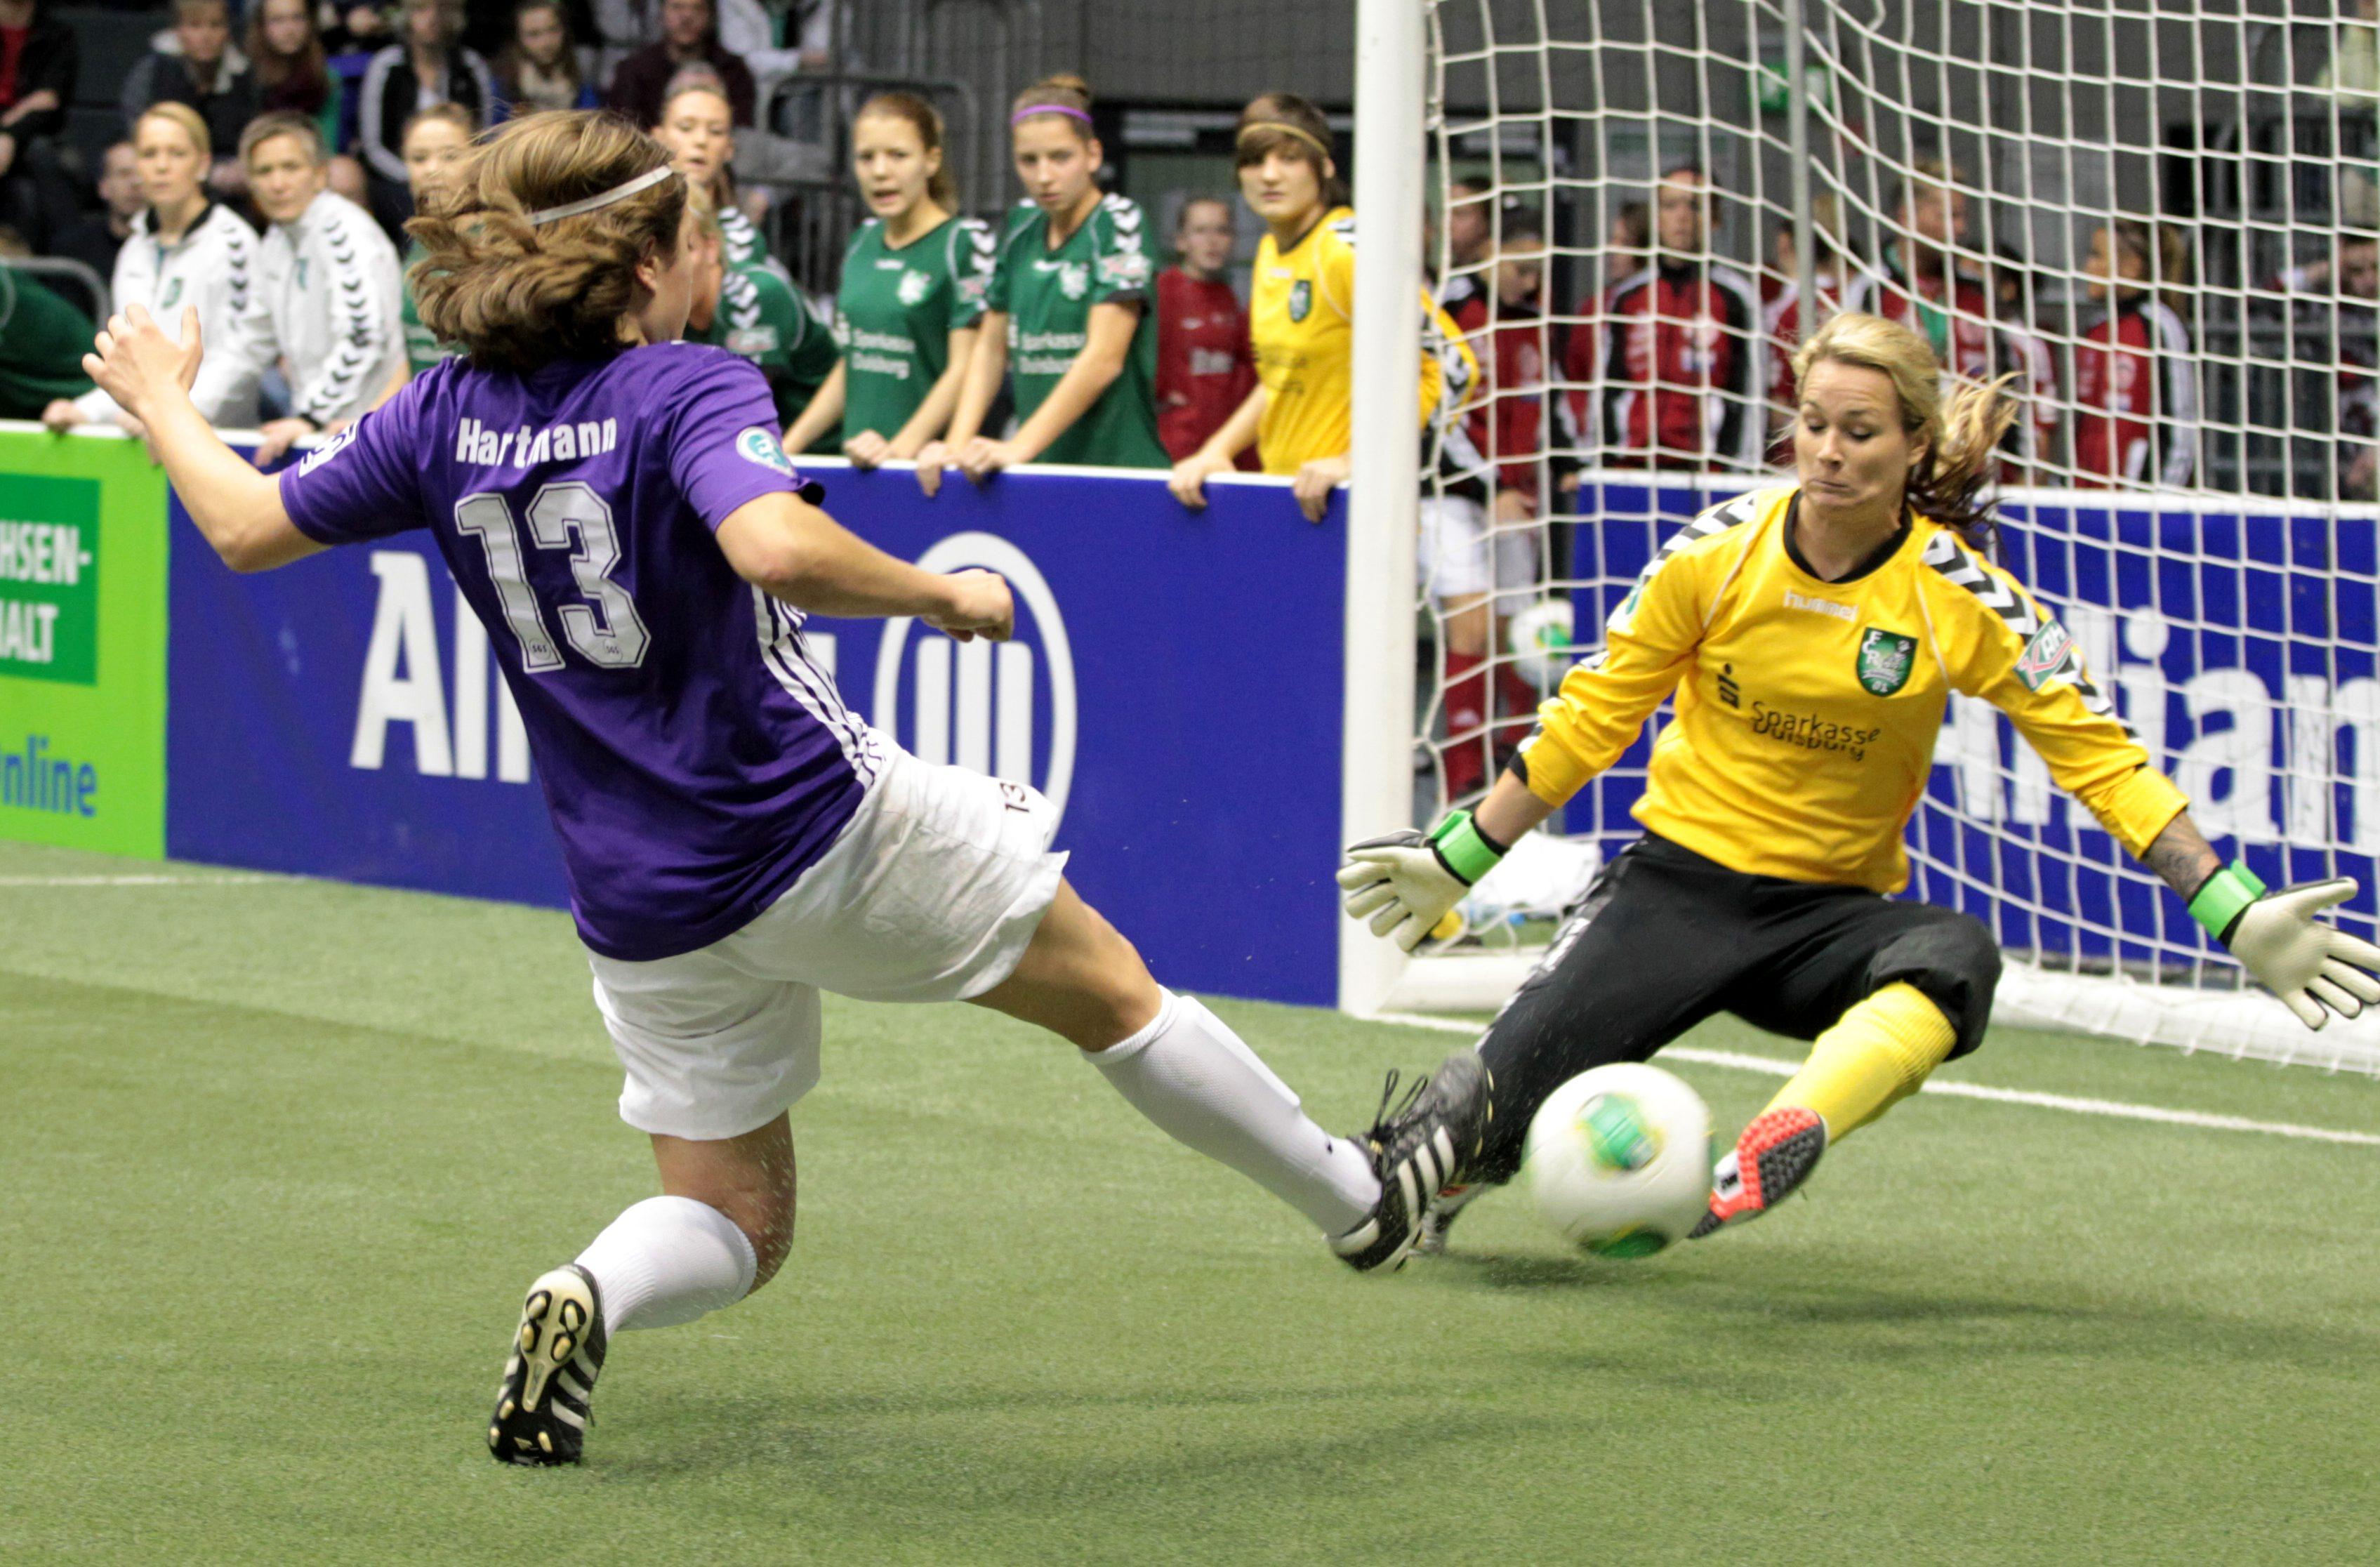 DFB Women's Indoor Cup 2013